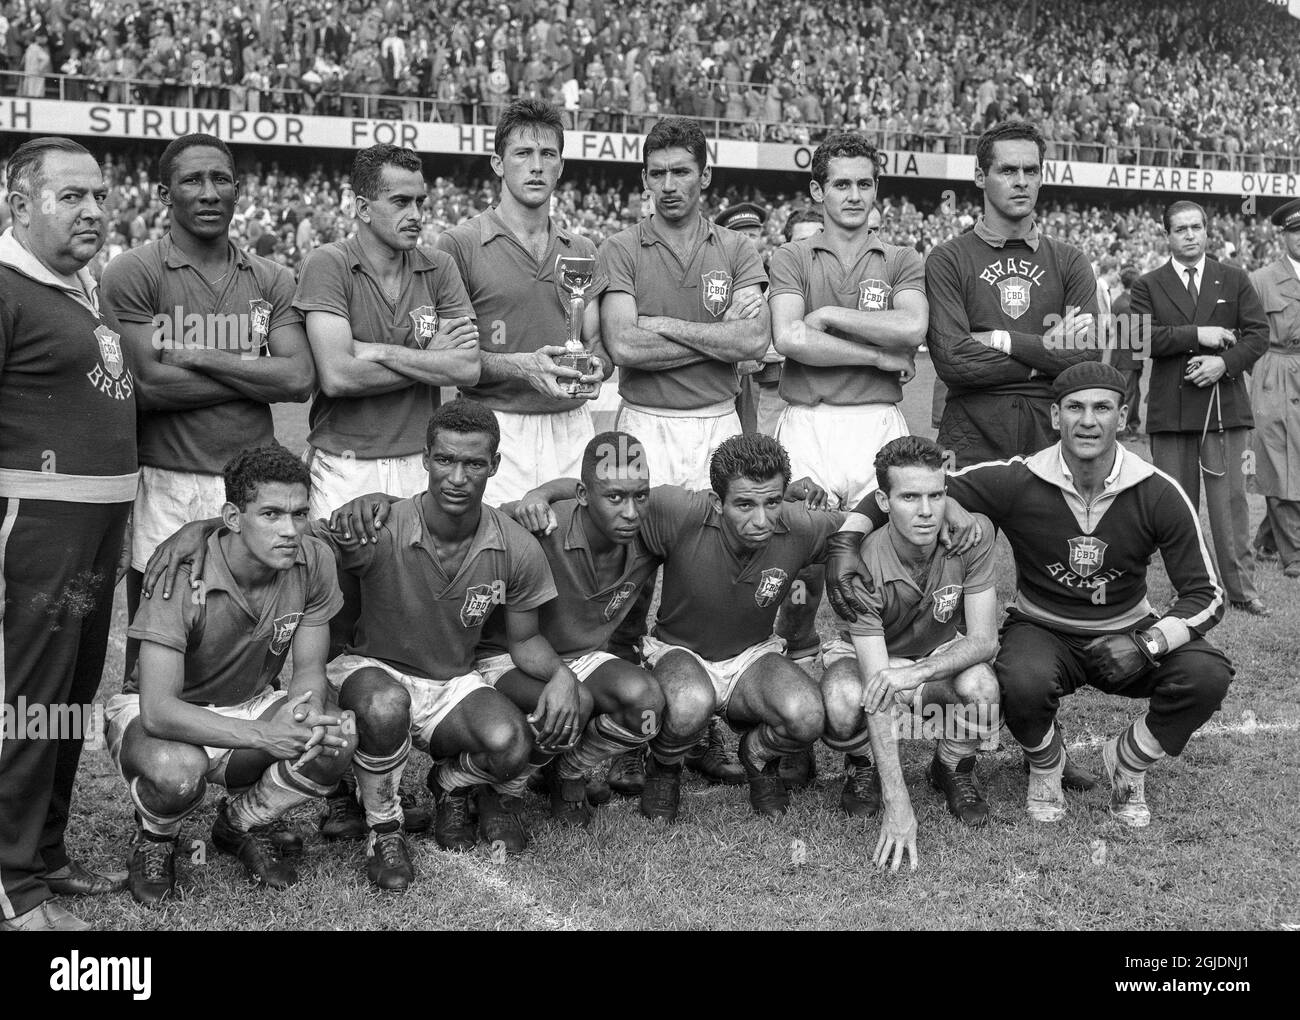 STOCKHOLM 1958-06-29 l'équipe nationale de football du Brésil pose avec le trophée après avoir remporté la finale de la coupe du monde de la FIFA 1958 contre la Suède, au stade Rasunda à Stockholm, en Suède. Le Brésil a gagné 5-2 et est devenu des champions du monde pour la première fois. Photo: Pressens Bild / TT / code: 190 Banque D'Images